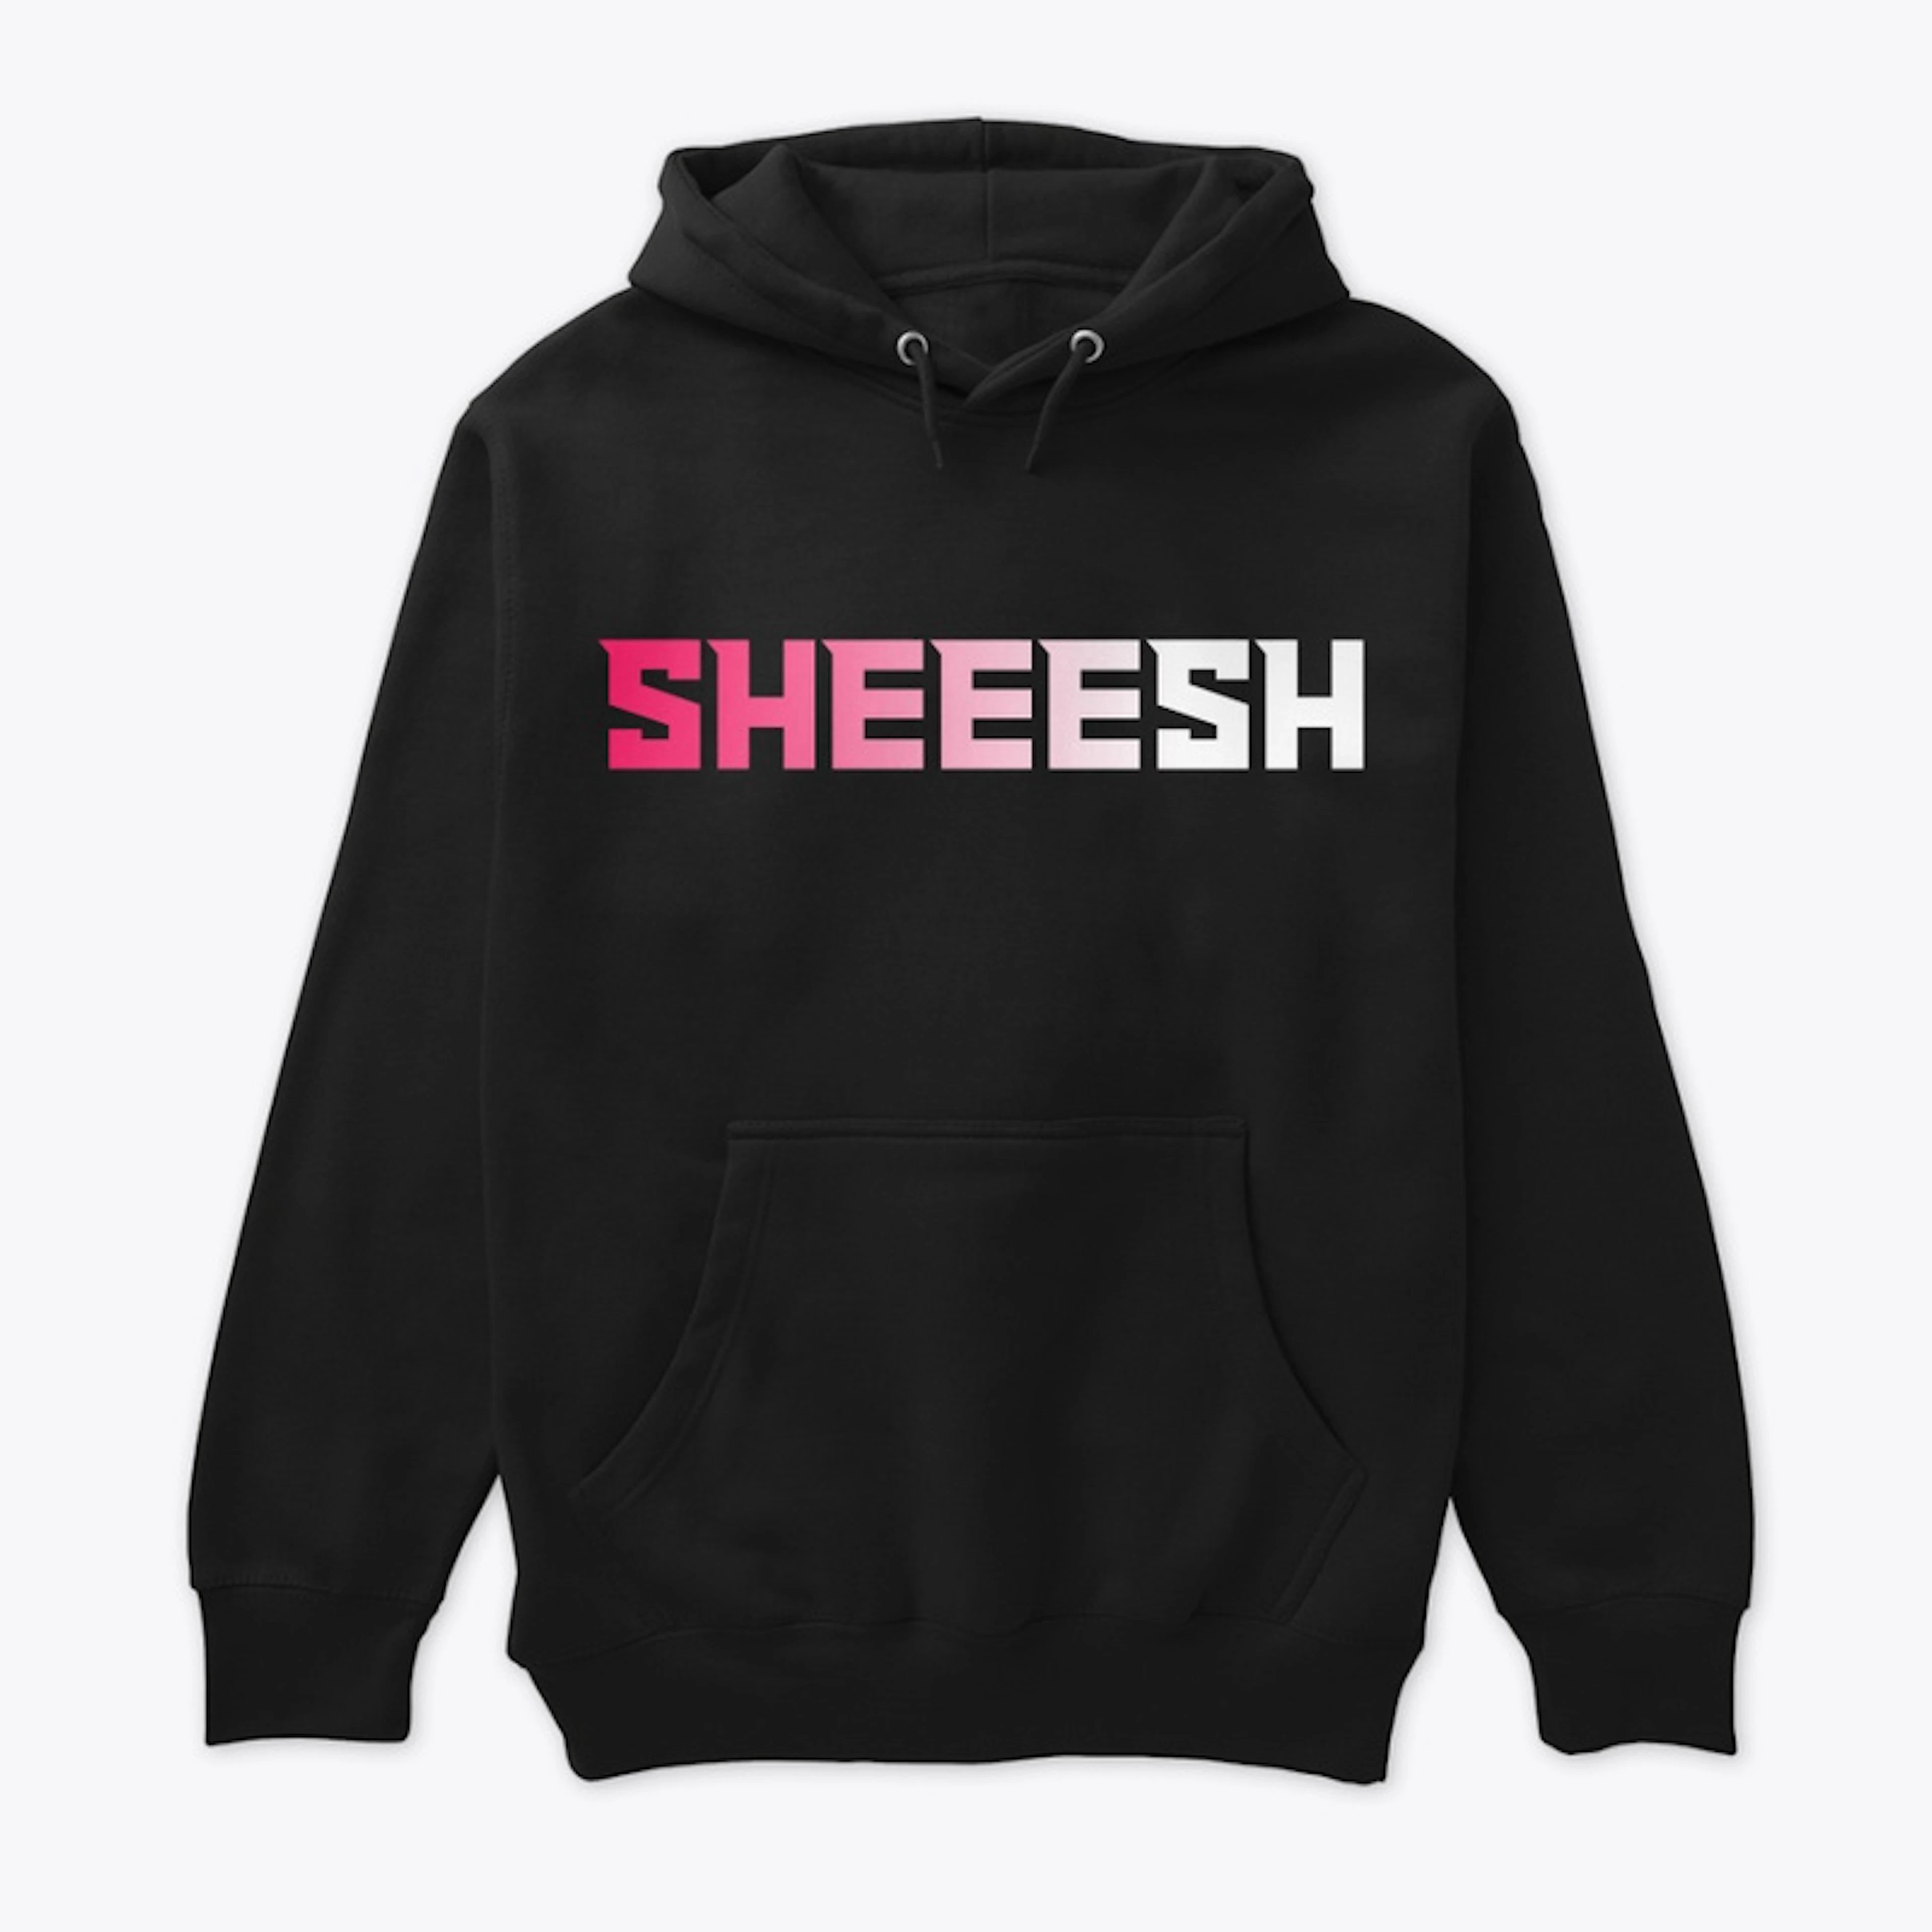 SHEEESH - Pullover Hoodie